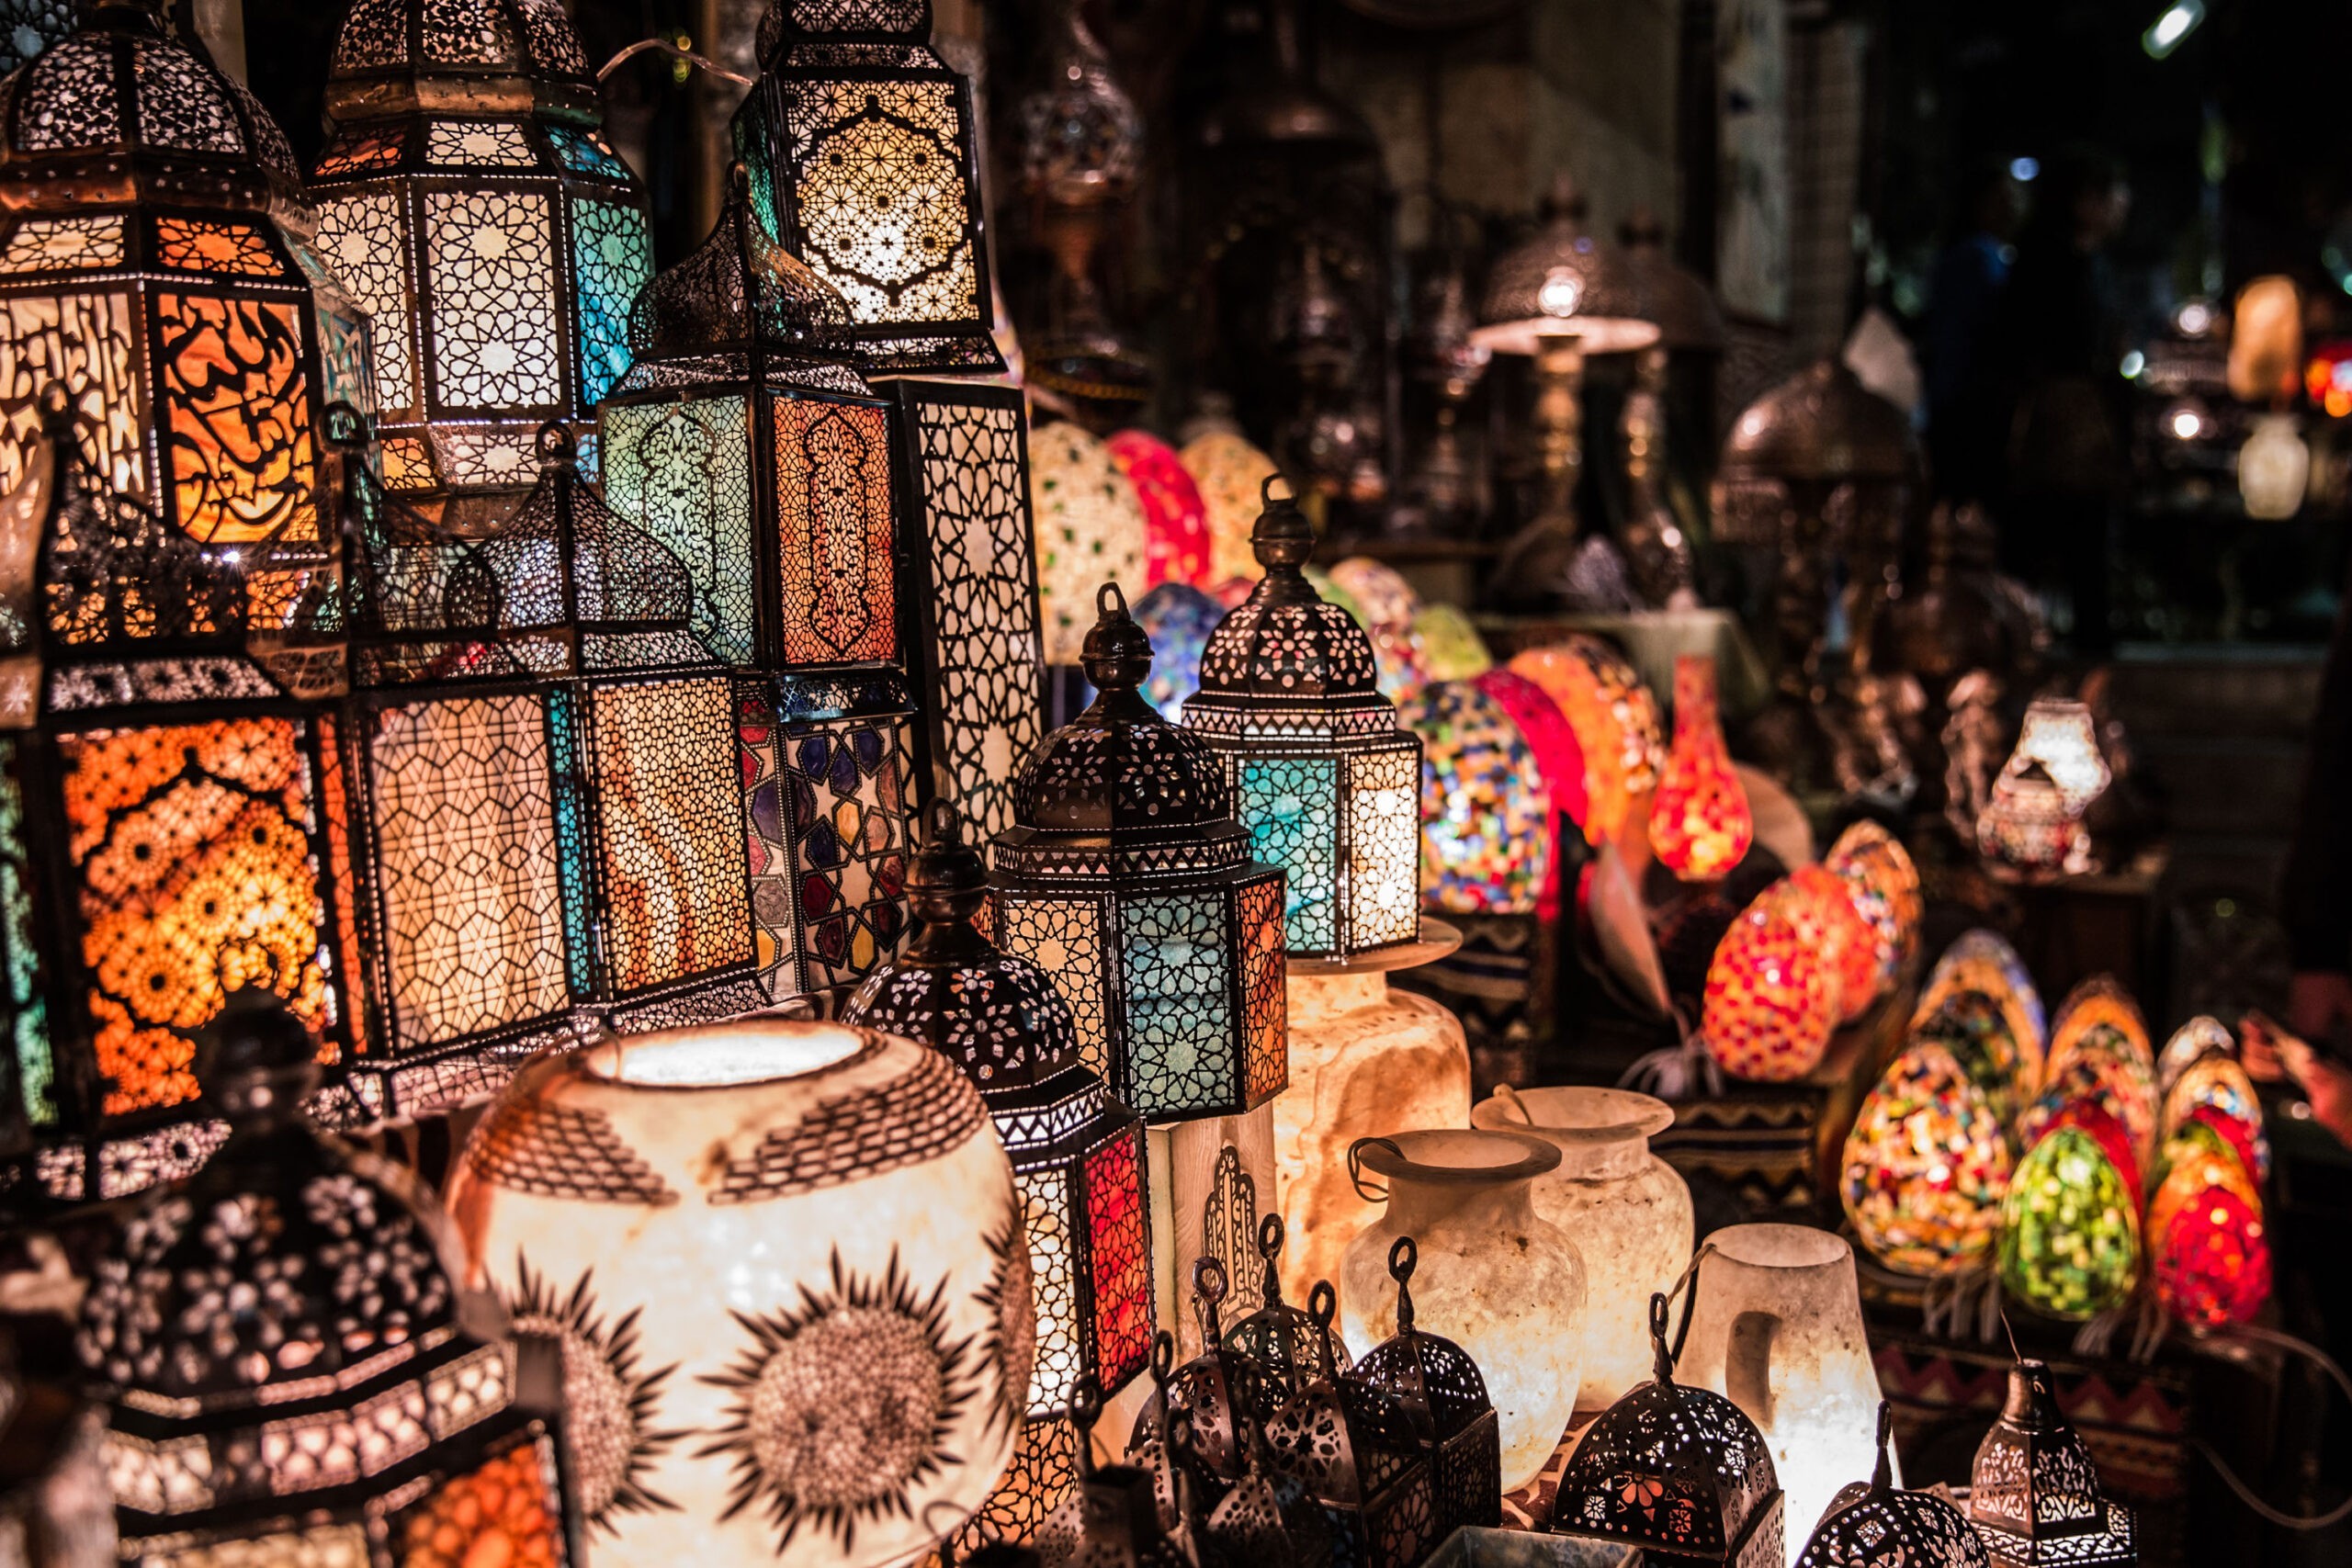 khan el khalili market in Egypt